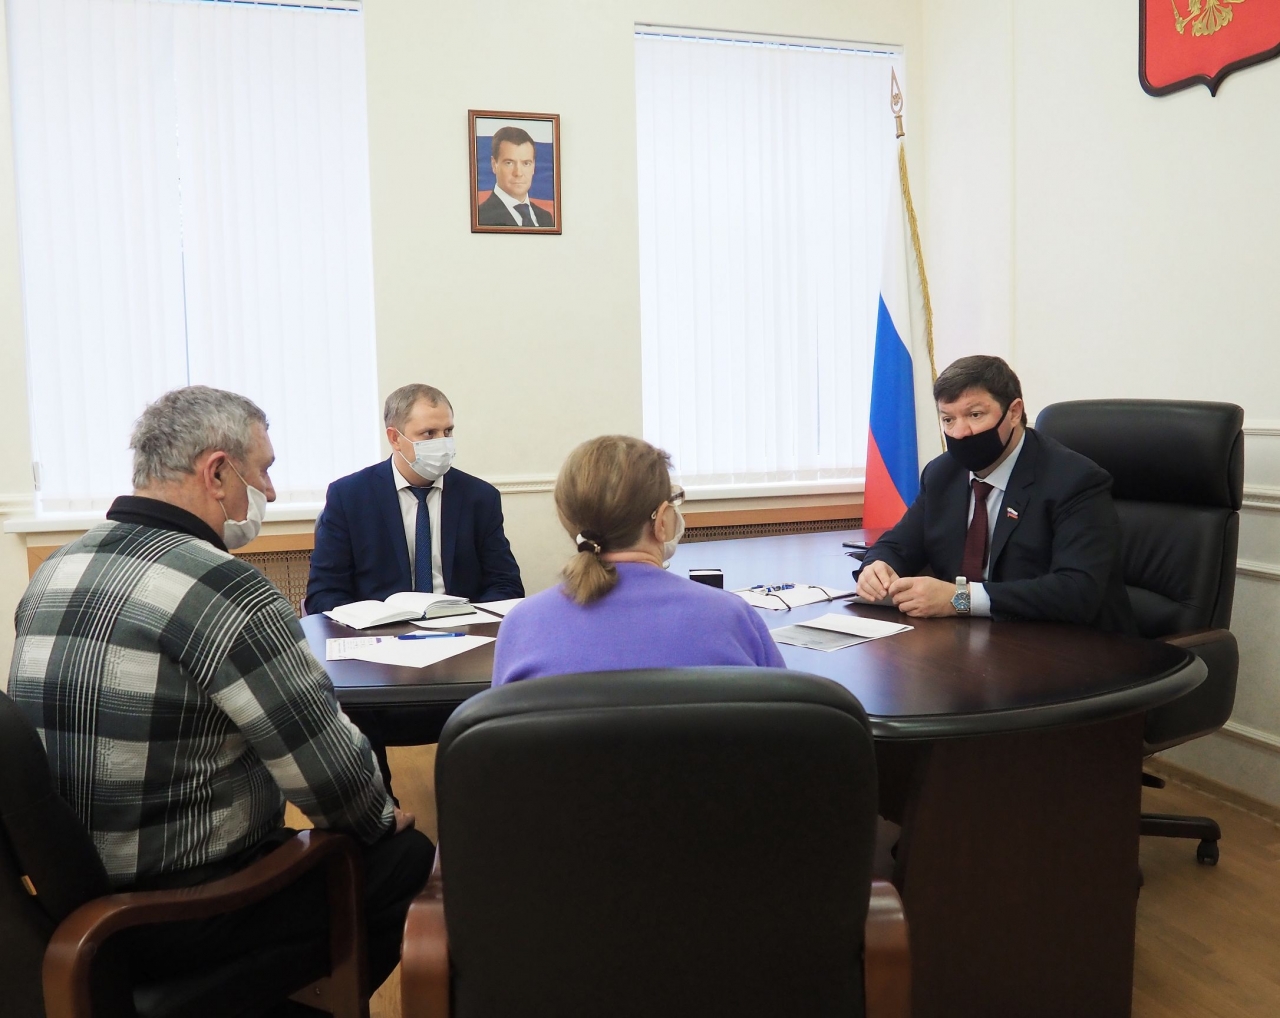 Геннадий Ягубов: «Главная задача депутата –помогать людям»